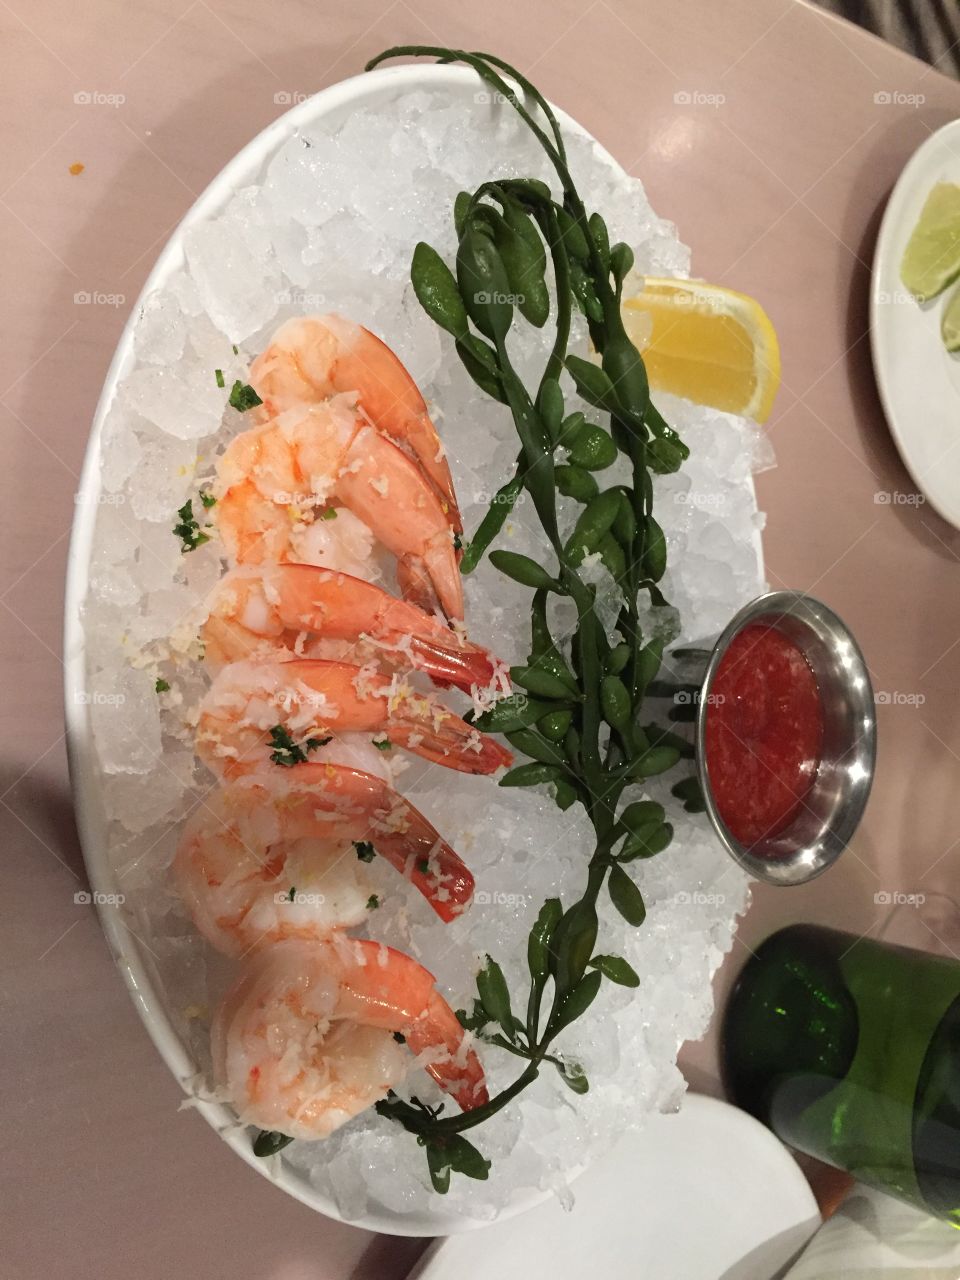 Best Shrimp Cocktail Ever!